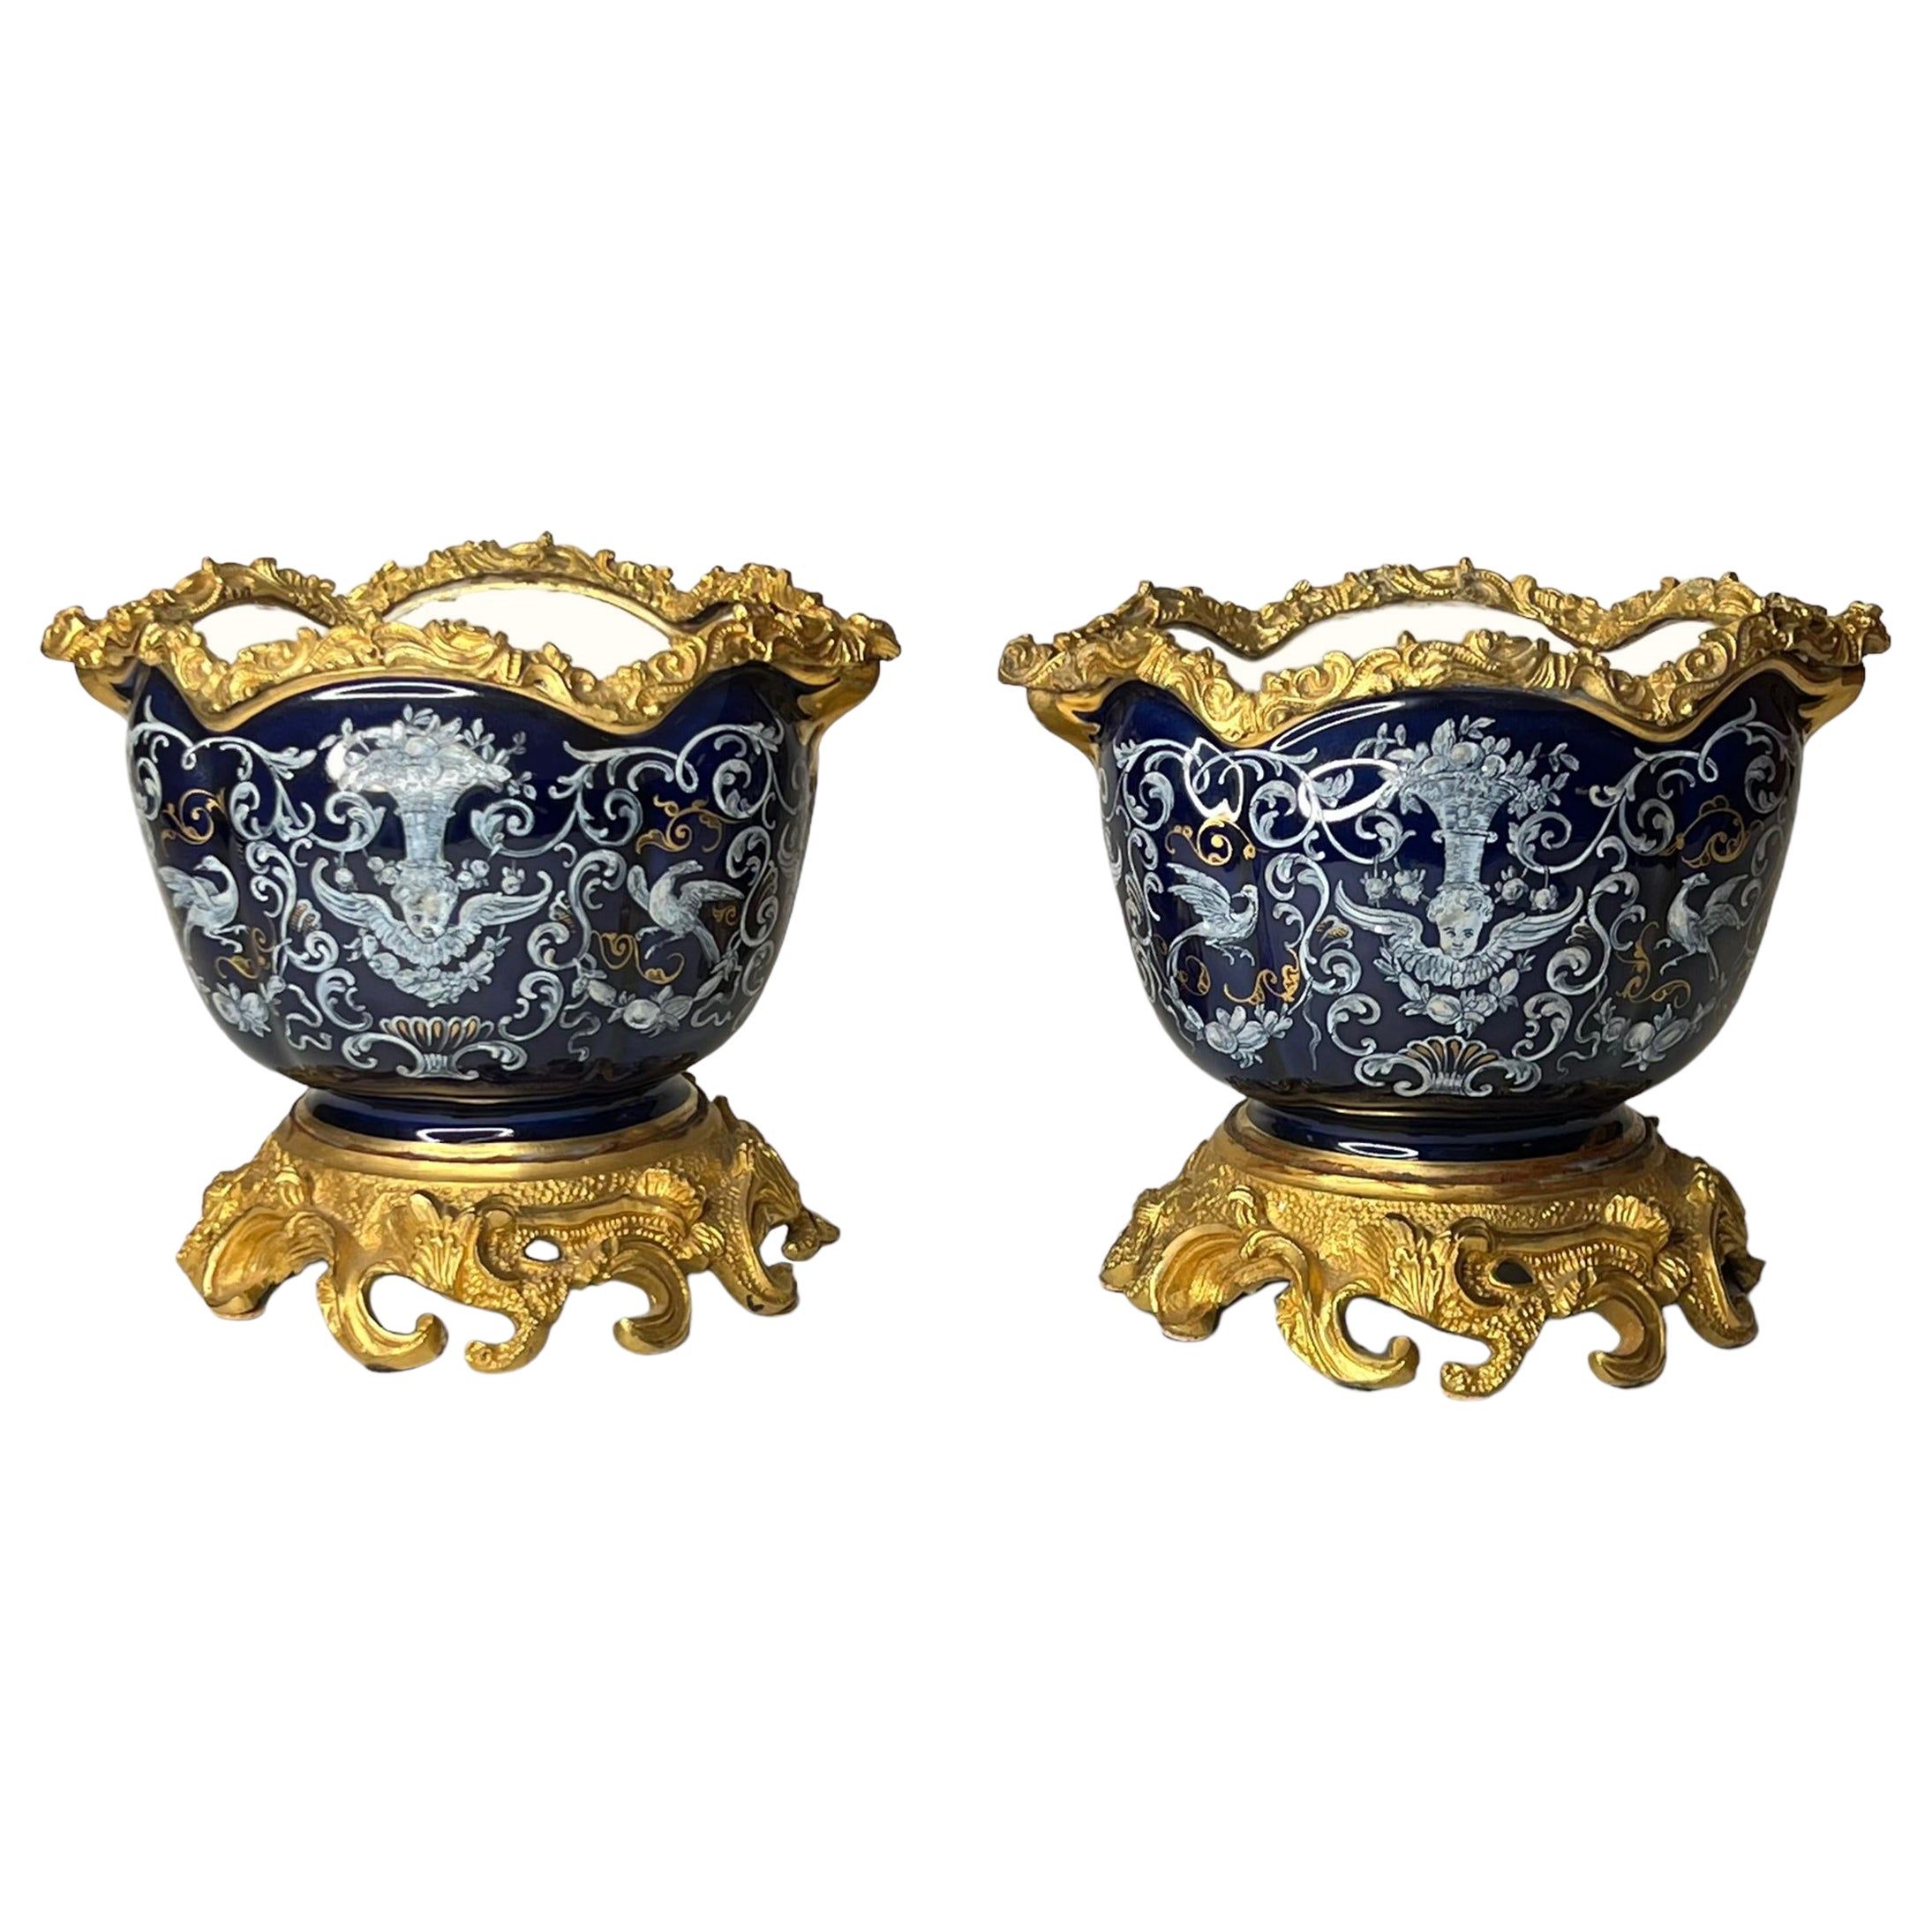 Ein Paar vergoldete, in Bronze gefasste Porzellanschalen mit neoklassizistischem Grisaille-Design